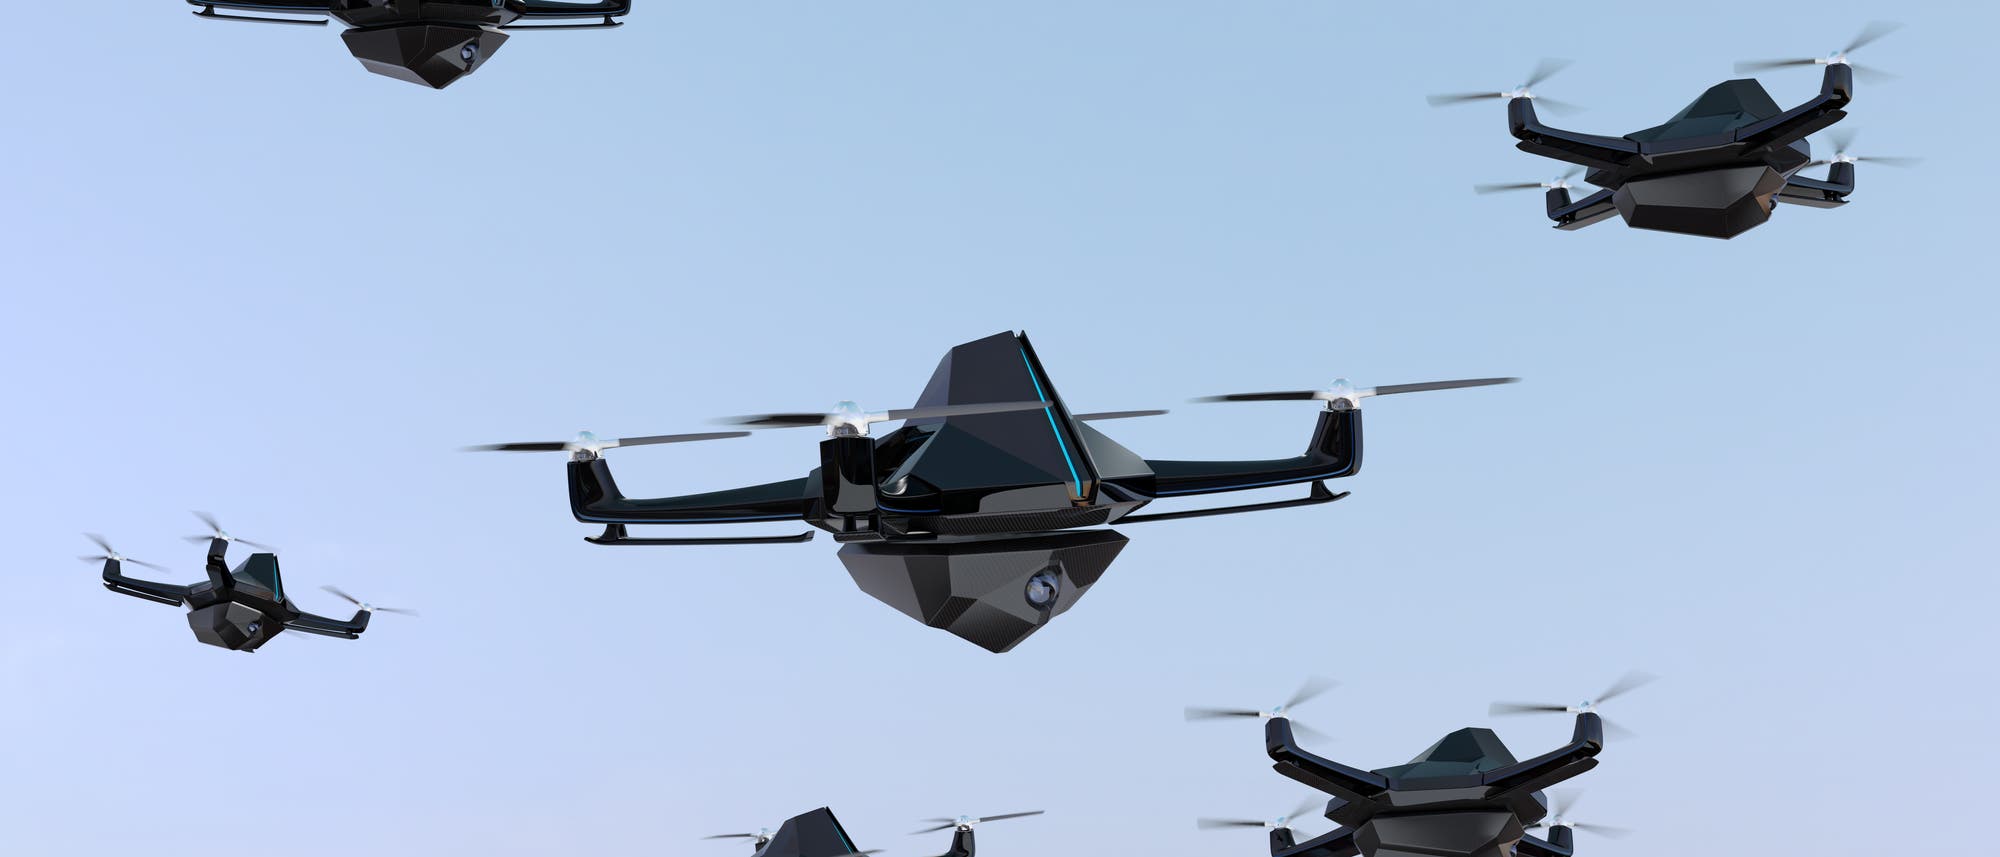 Mehrere bedrohlich aussehende Quadcopter-Drohnen vor blauem Himmelshintergrund.